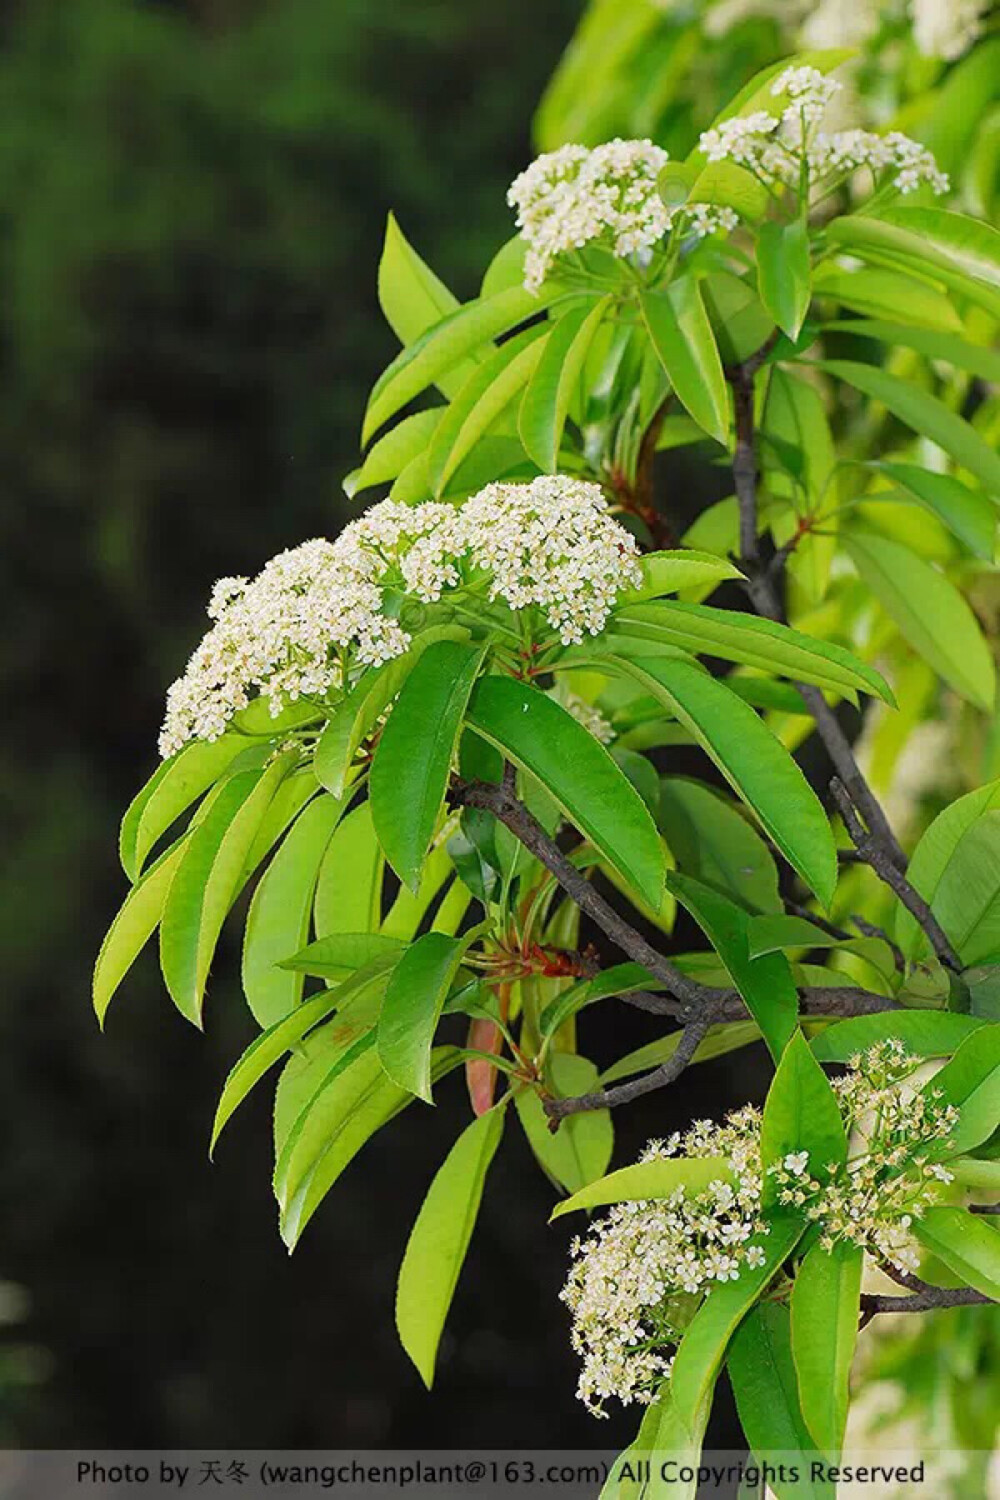 石楠拉丁学名 photinia serratifolia石楠树冠圆形,叶丛浓密,花密生